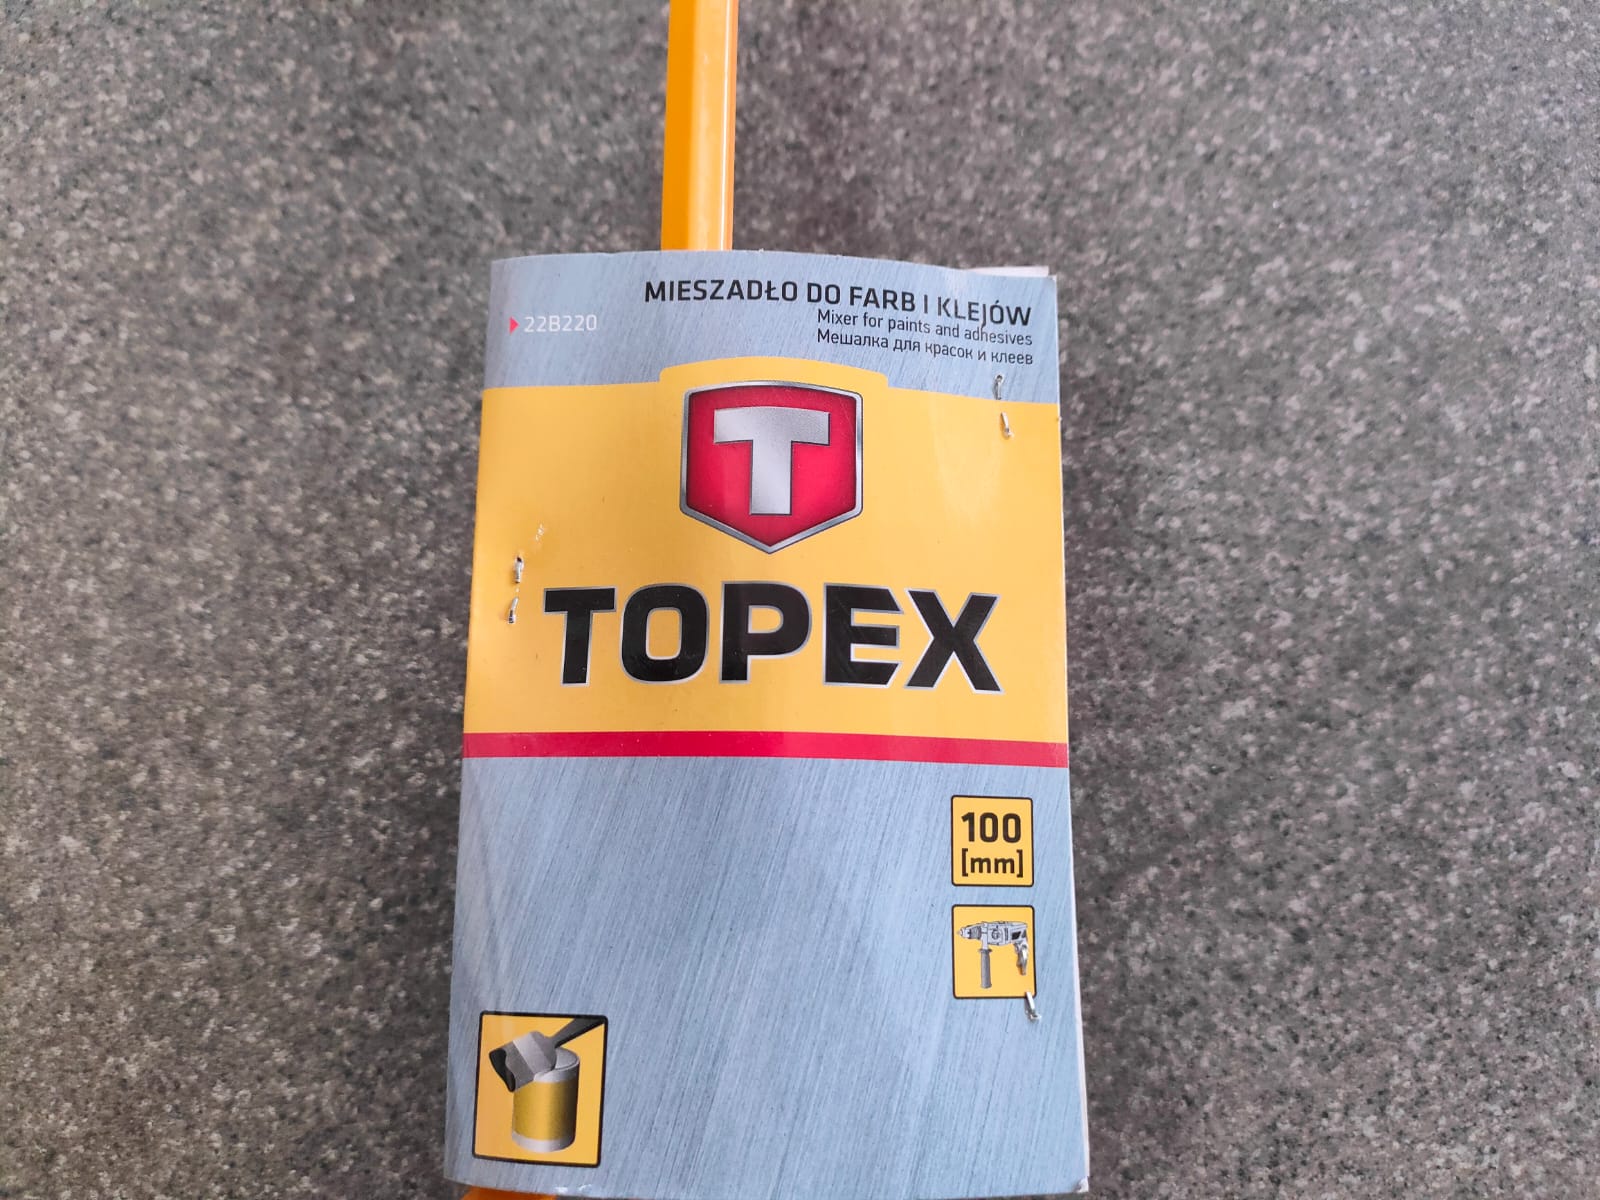 Мешалка / венчик / миксер для размешивания краски на дрель 100 мм TOPEX